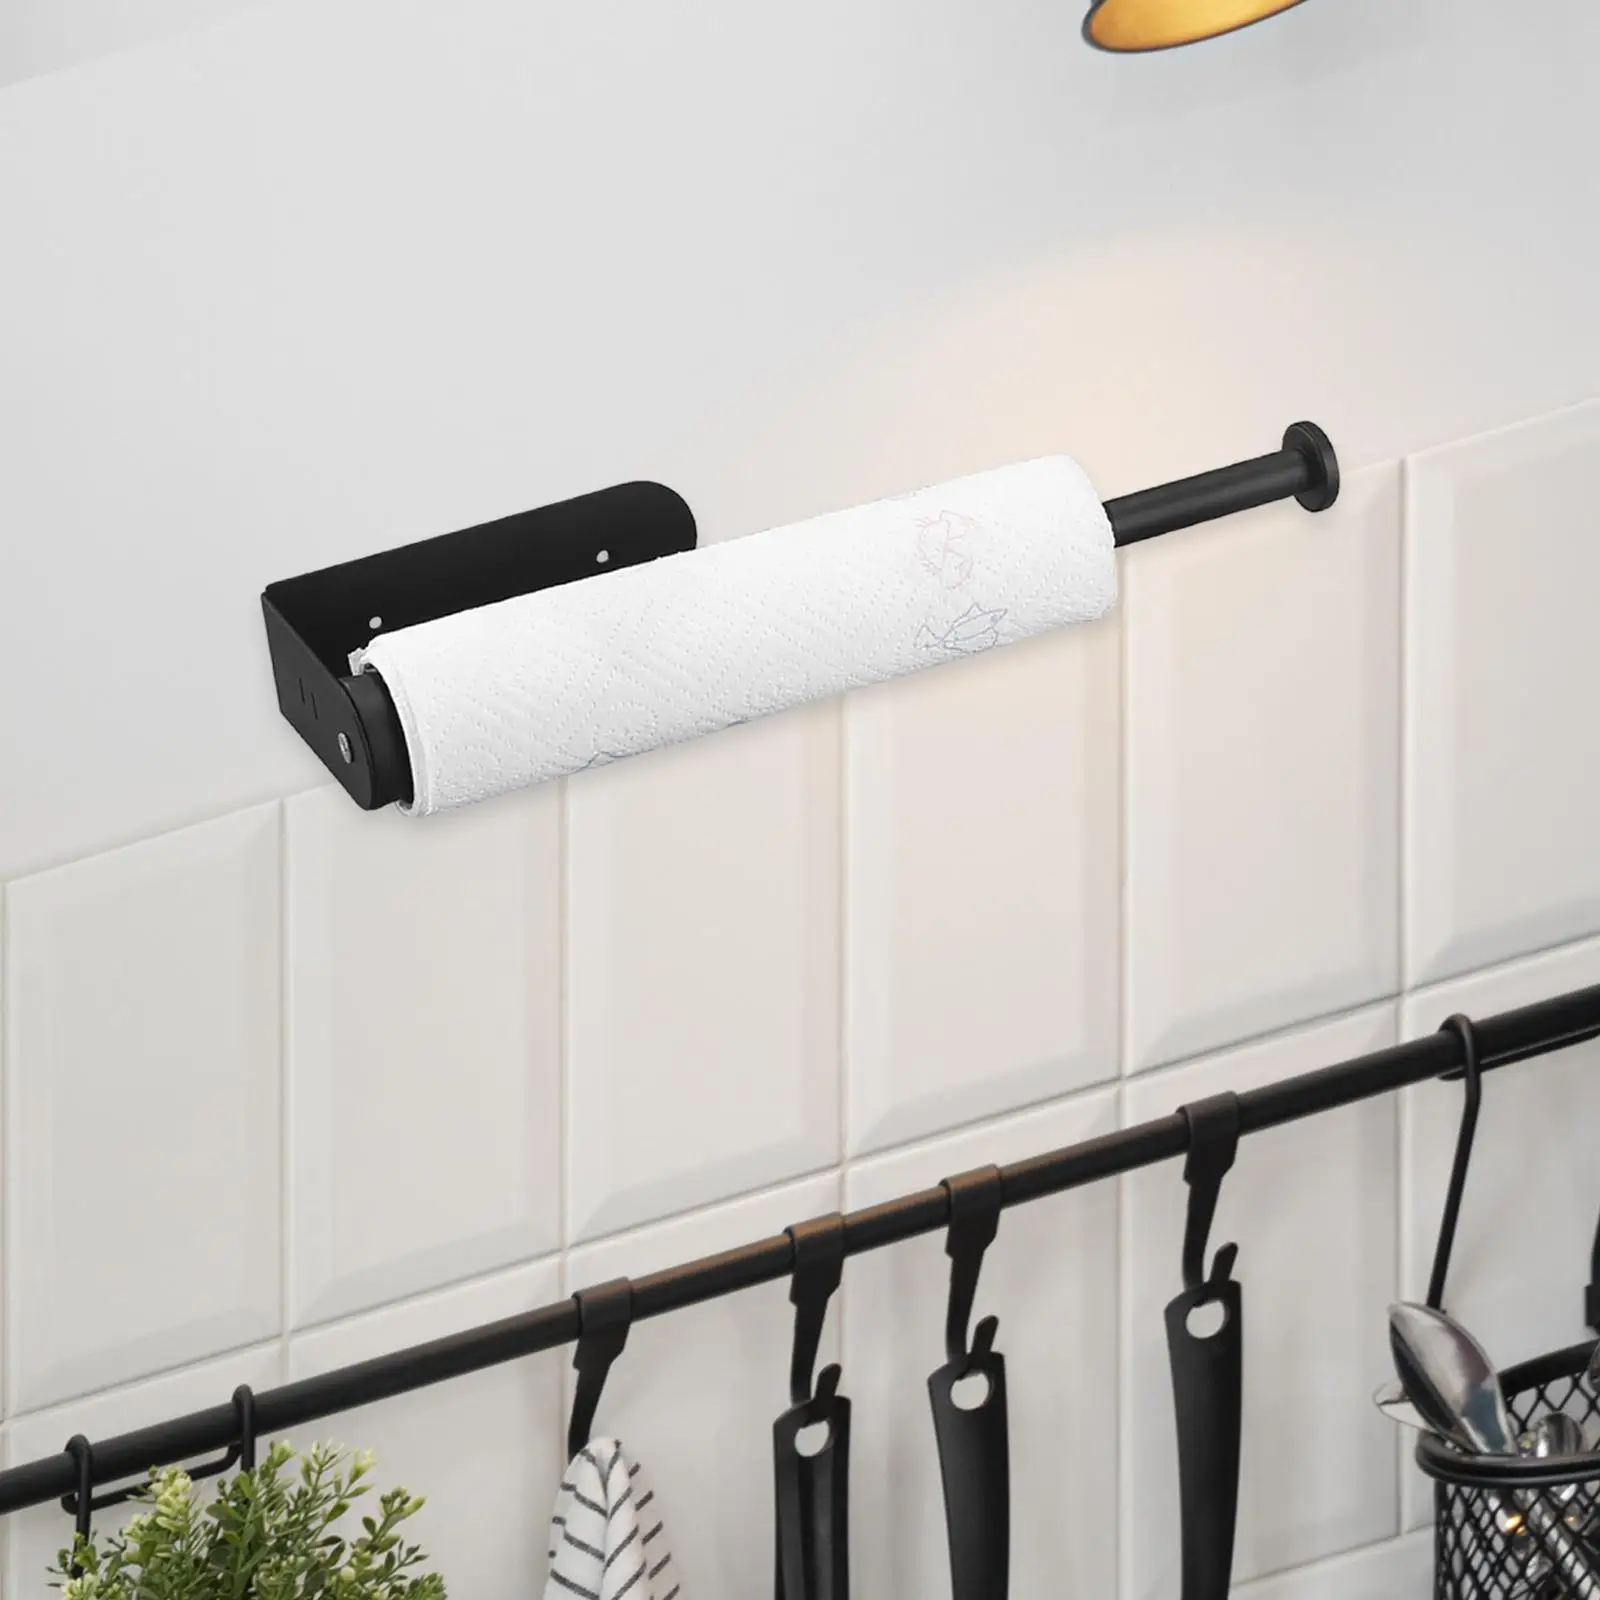 Paper Towel Holder, Toilet Paper Holder for Kitchen, Bathroom, Home